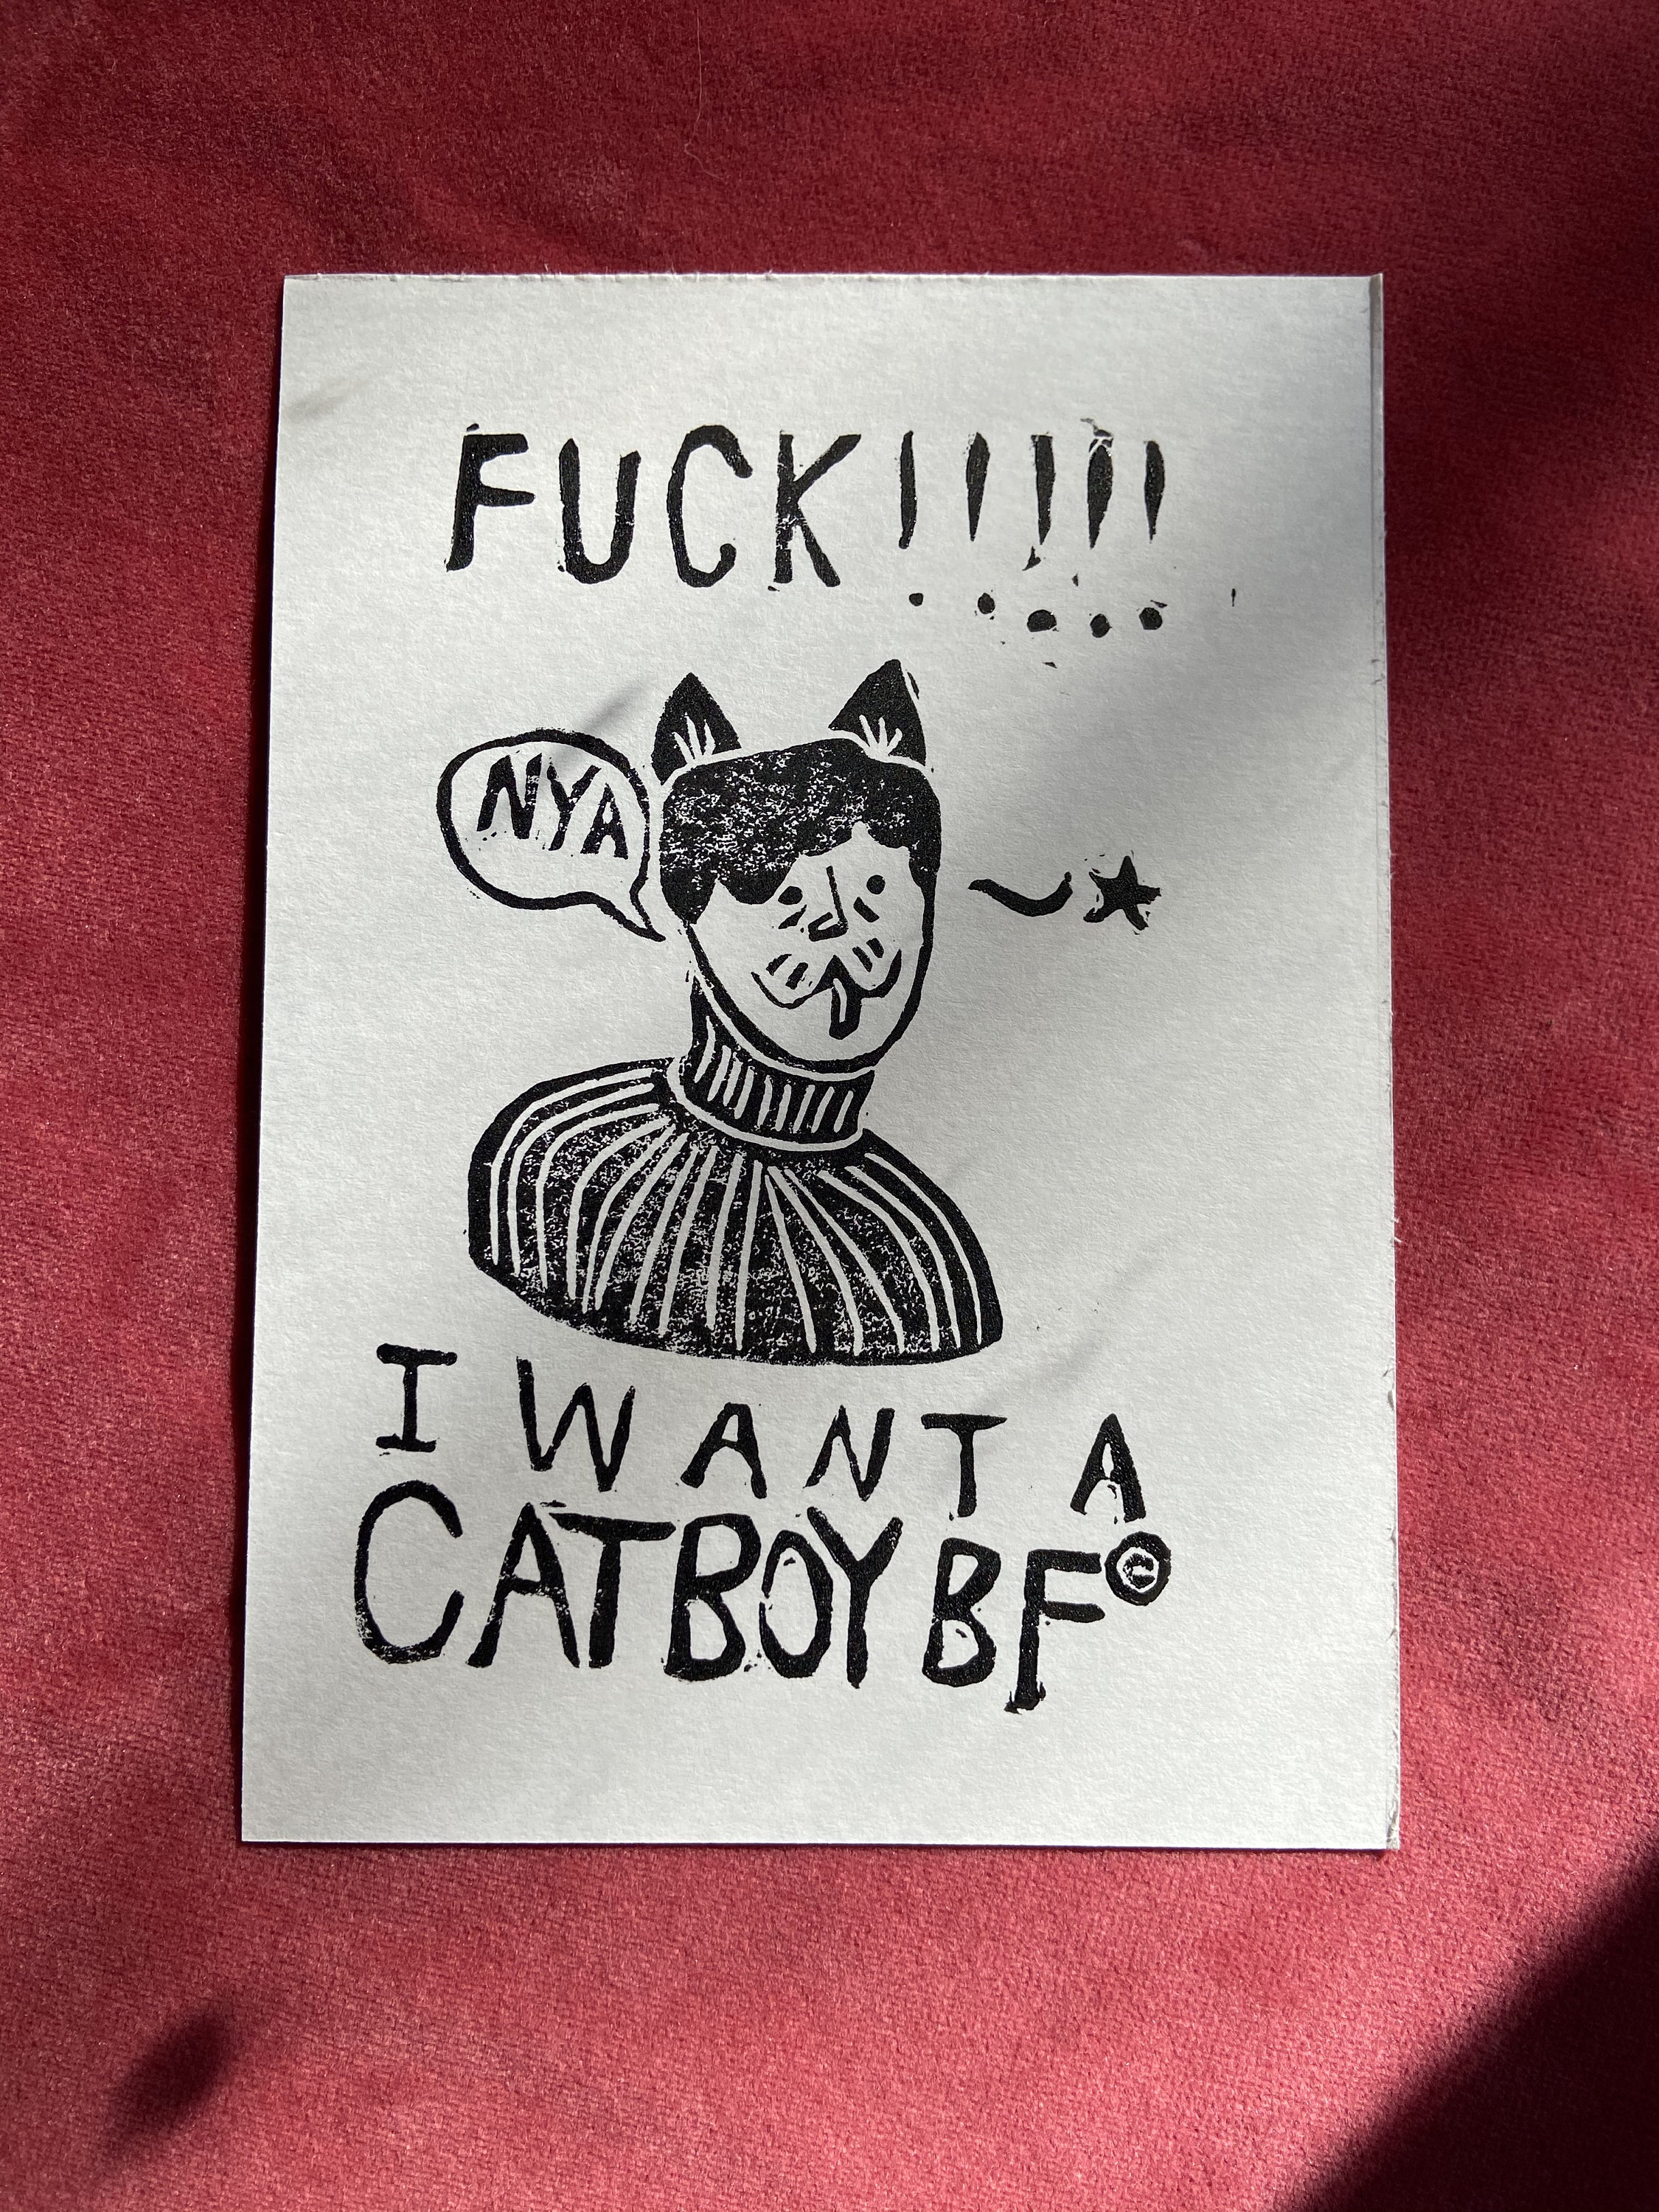 Catboy bf